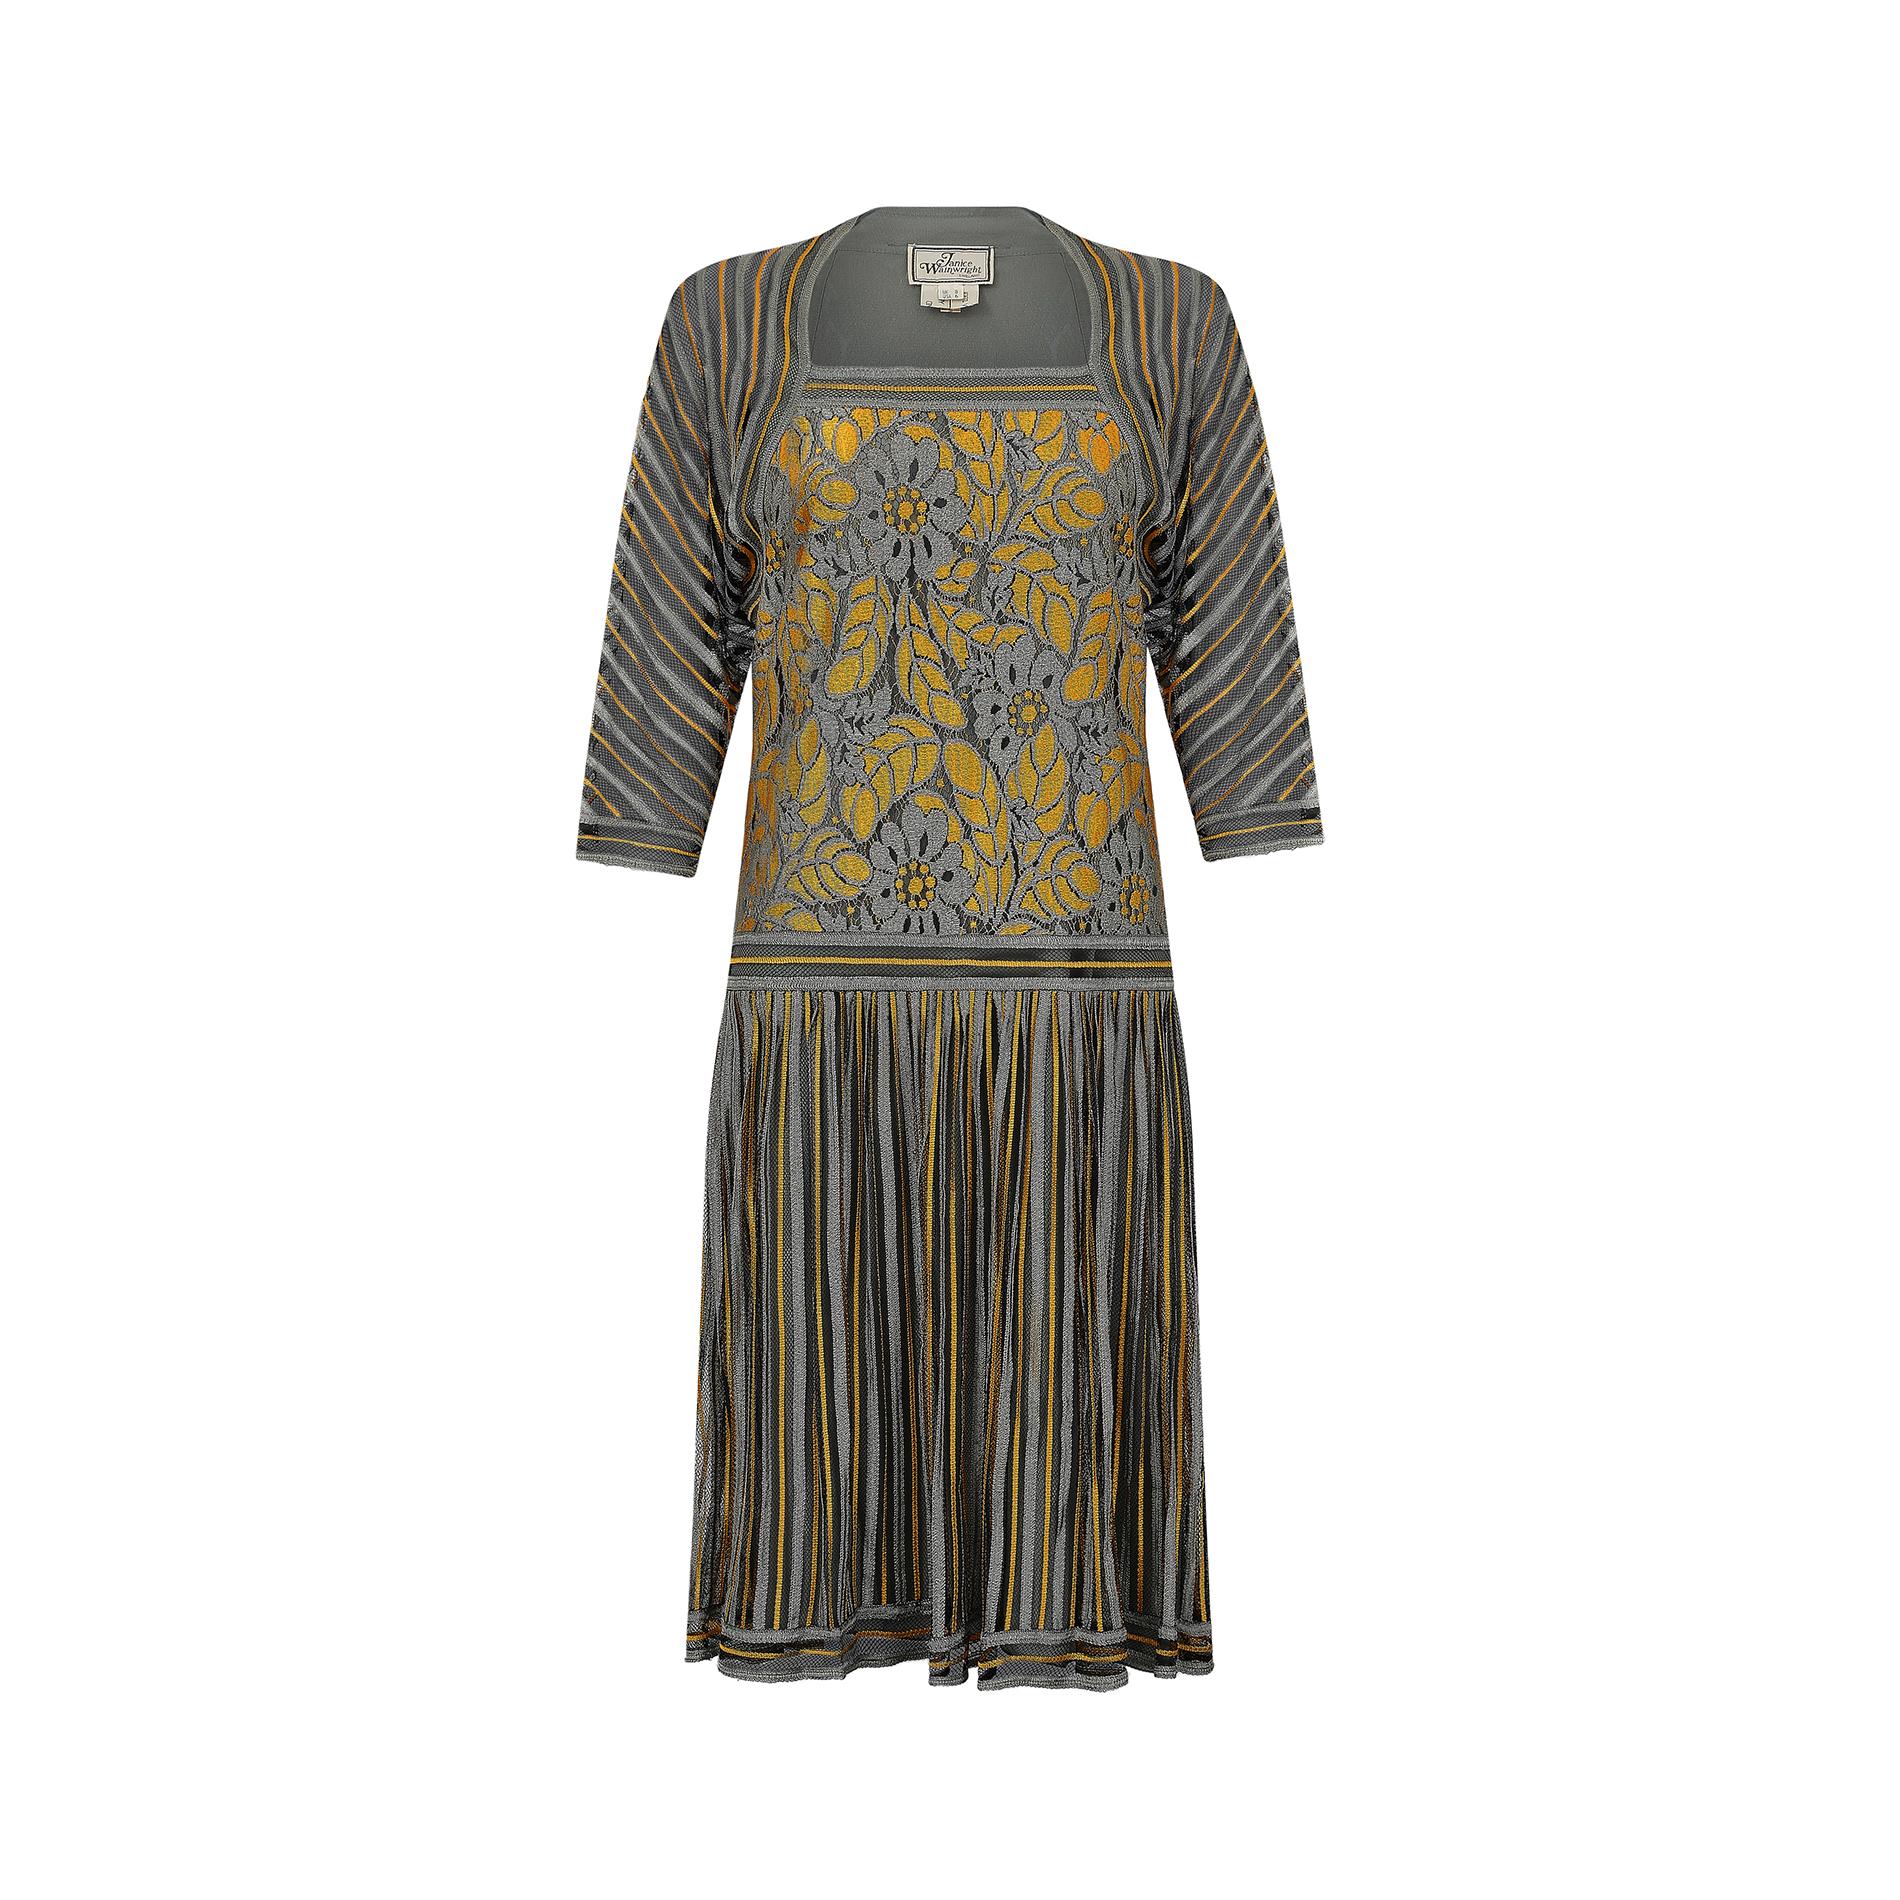 1970 Janice Wainwright, robe de claquette style années 1920.  Il s'agit d'un magnifique exemple des premières œuvres de Janice Wainwright, très recherchées par les collectionneurs et les musées.  Elle a fondé sa propre entreprise en 1970 après avoir